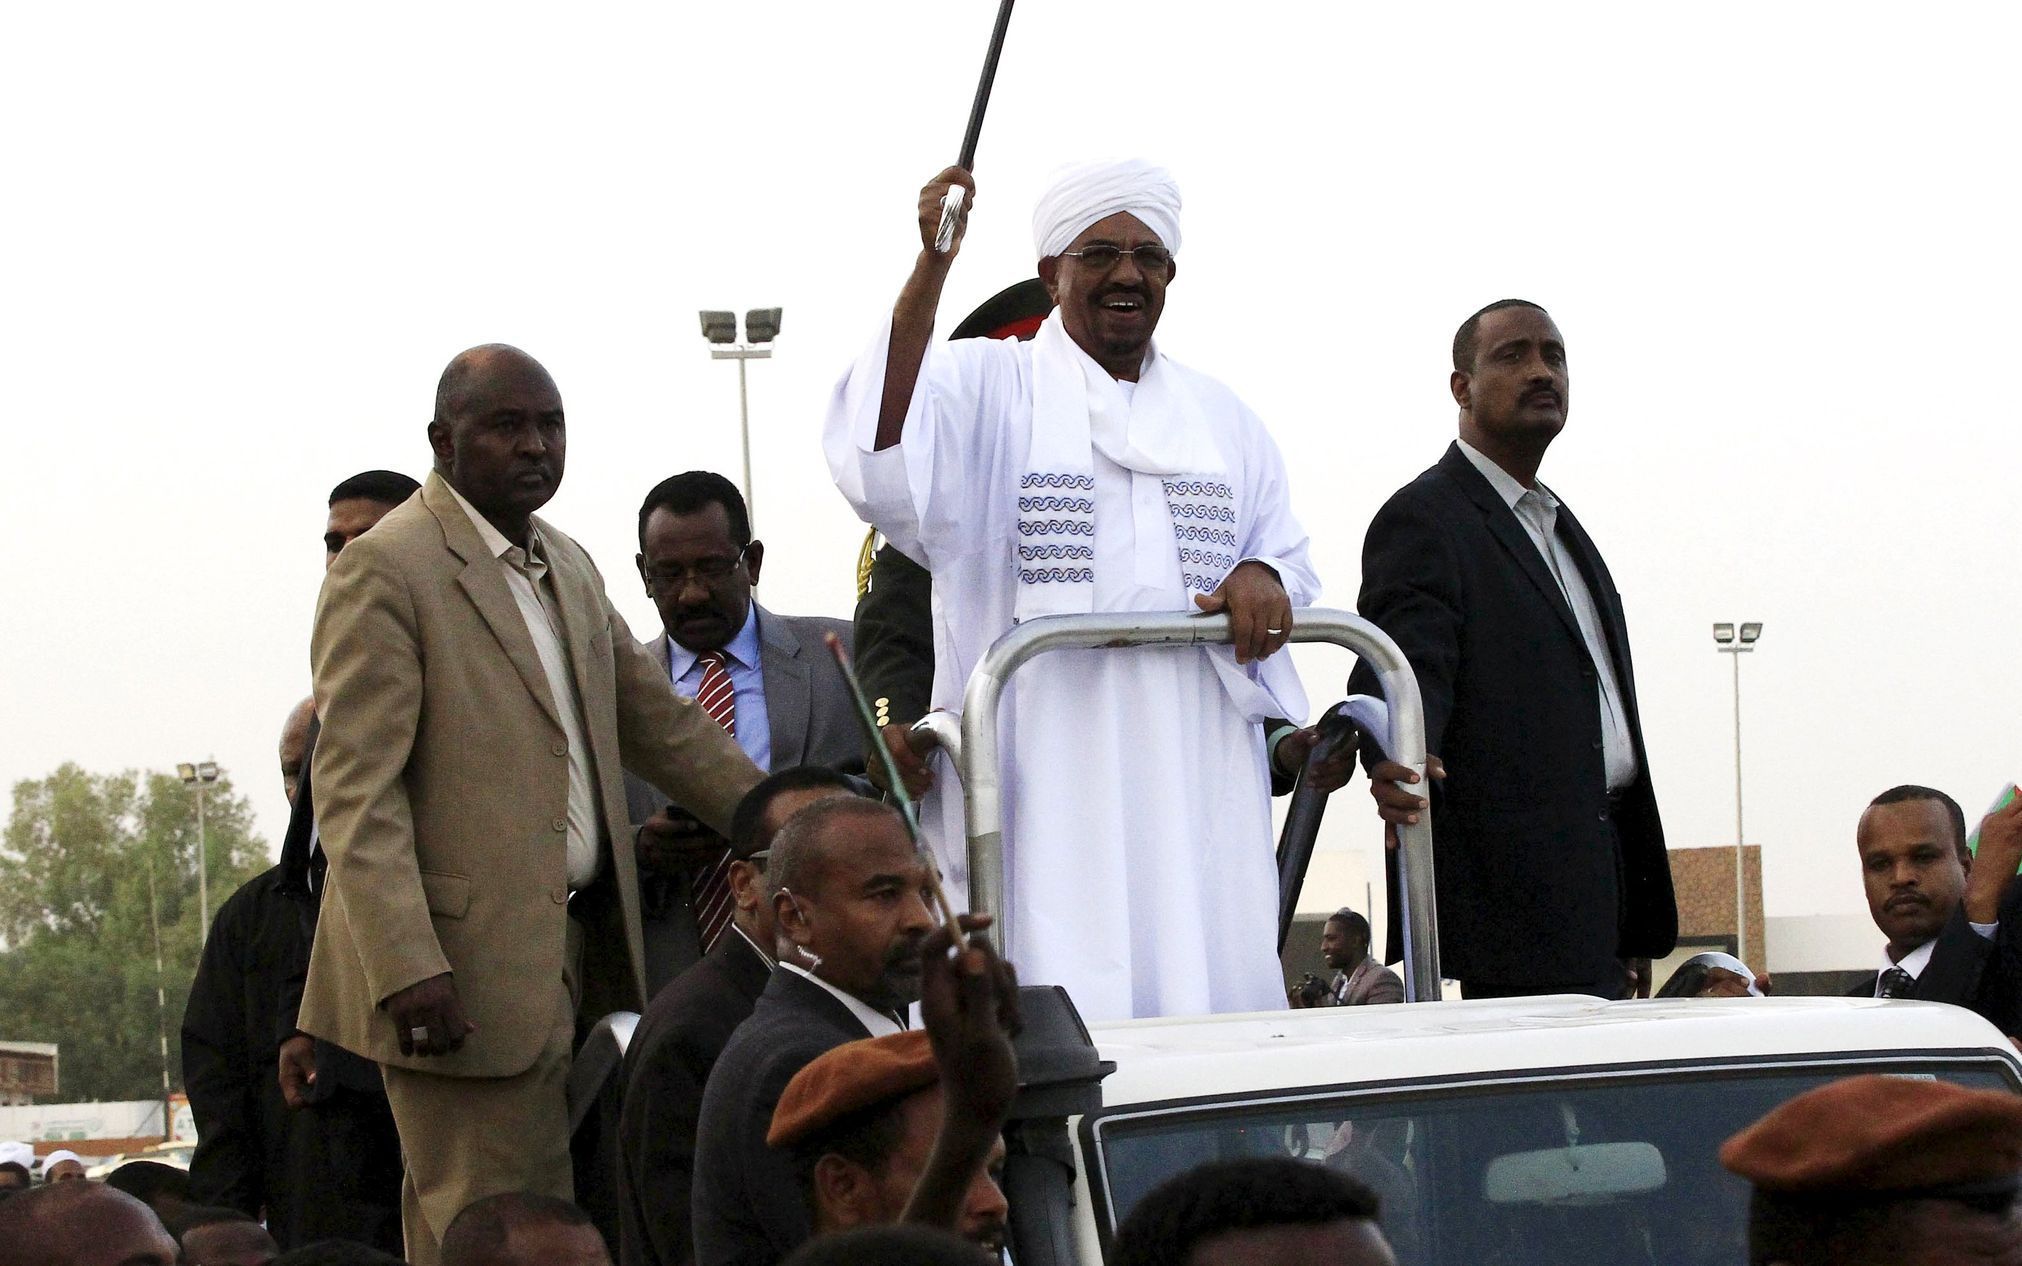 Súdánský prezident Umar Bašír.